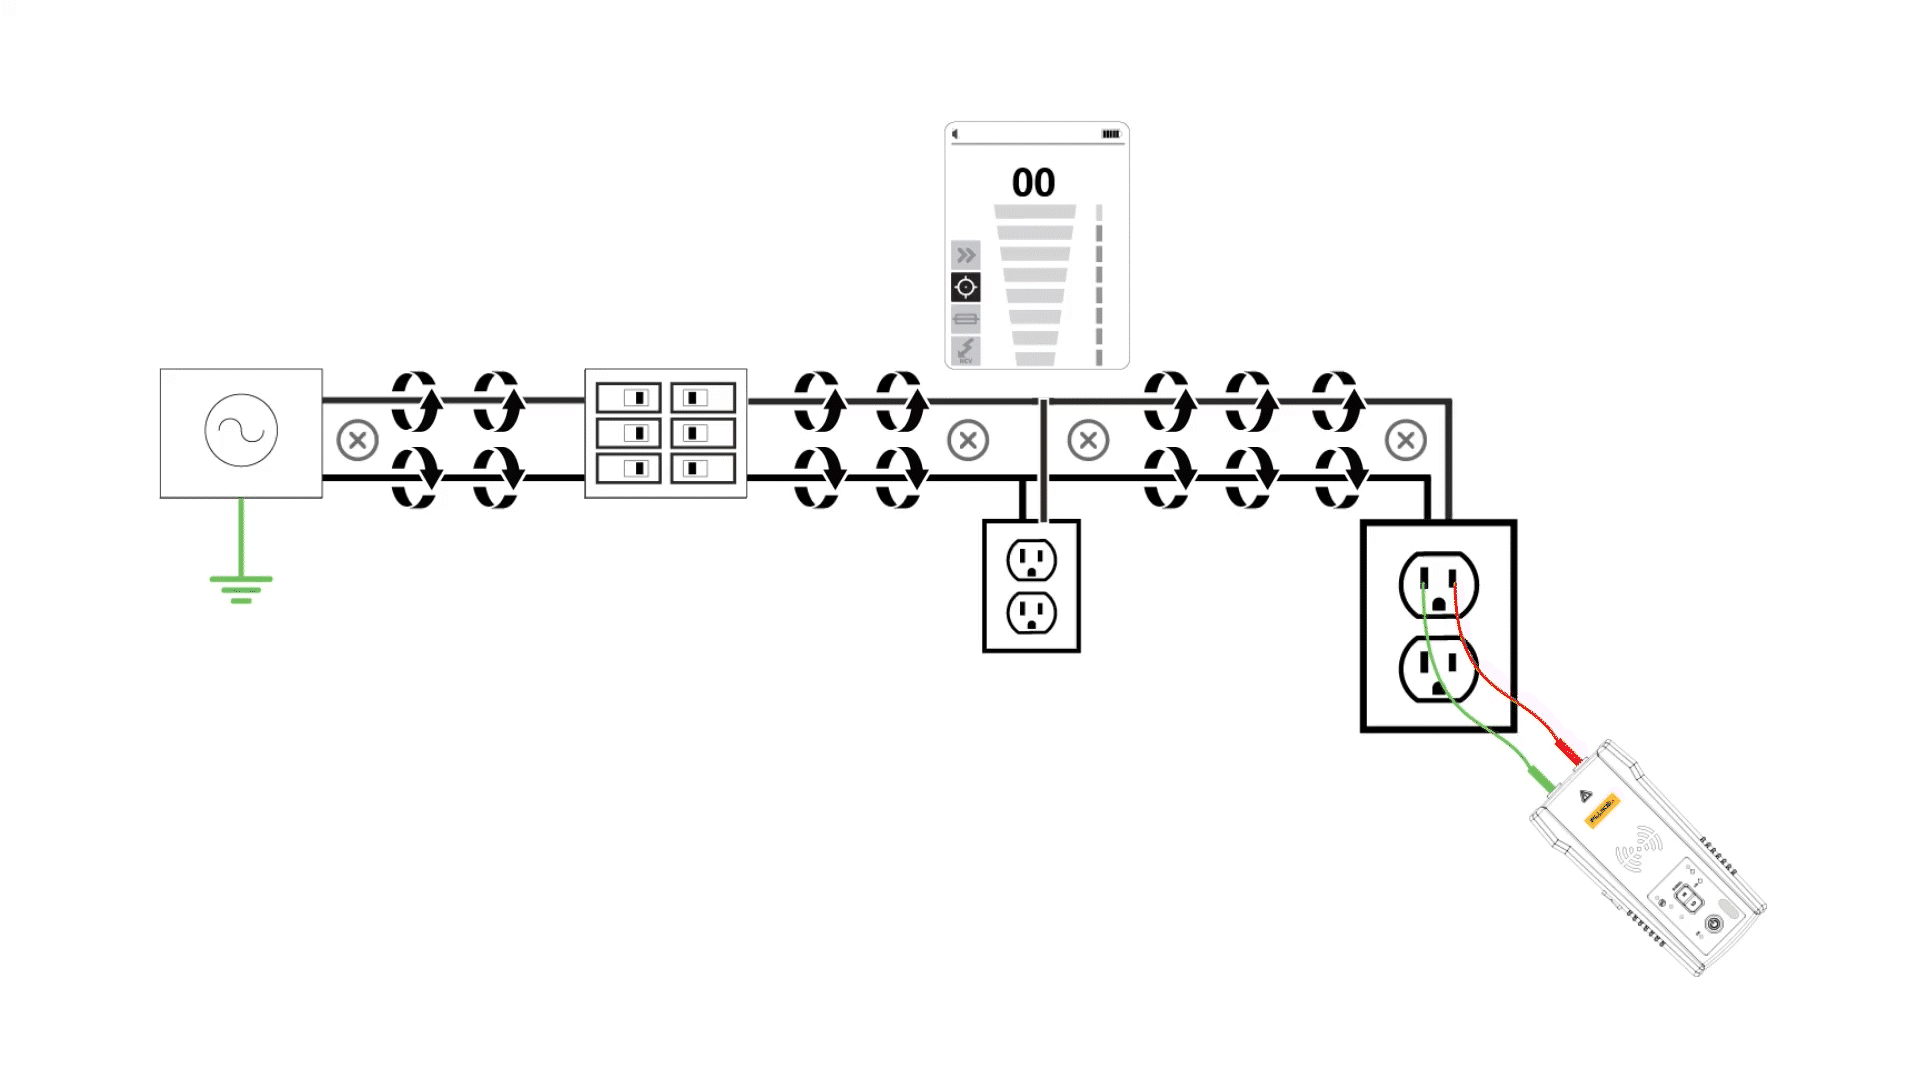 GIF 线路图显示了信号如何通过相邻的电线产生“信号抵消”效应